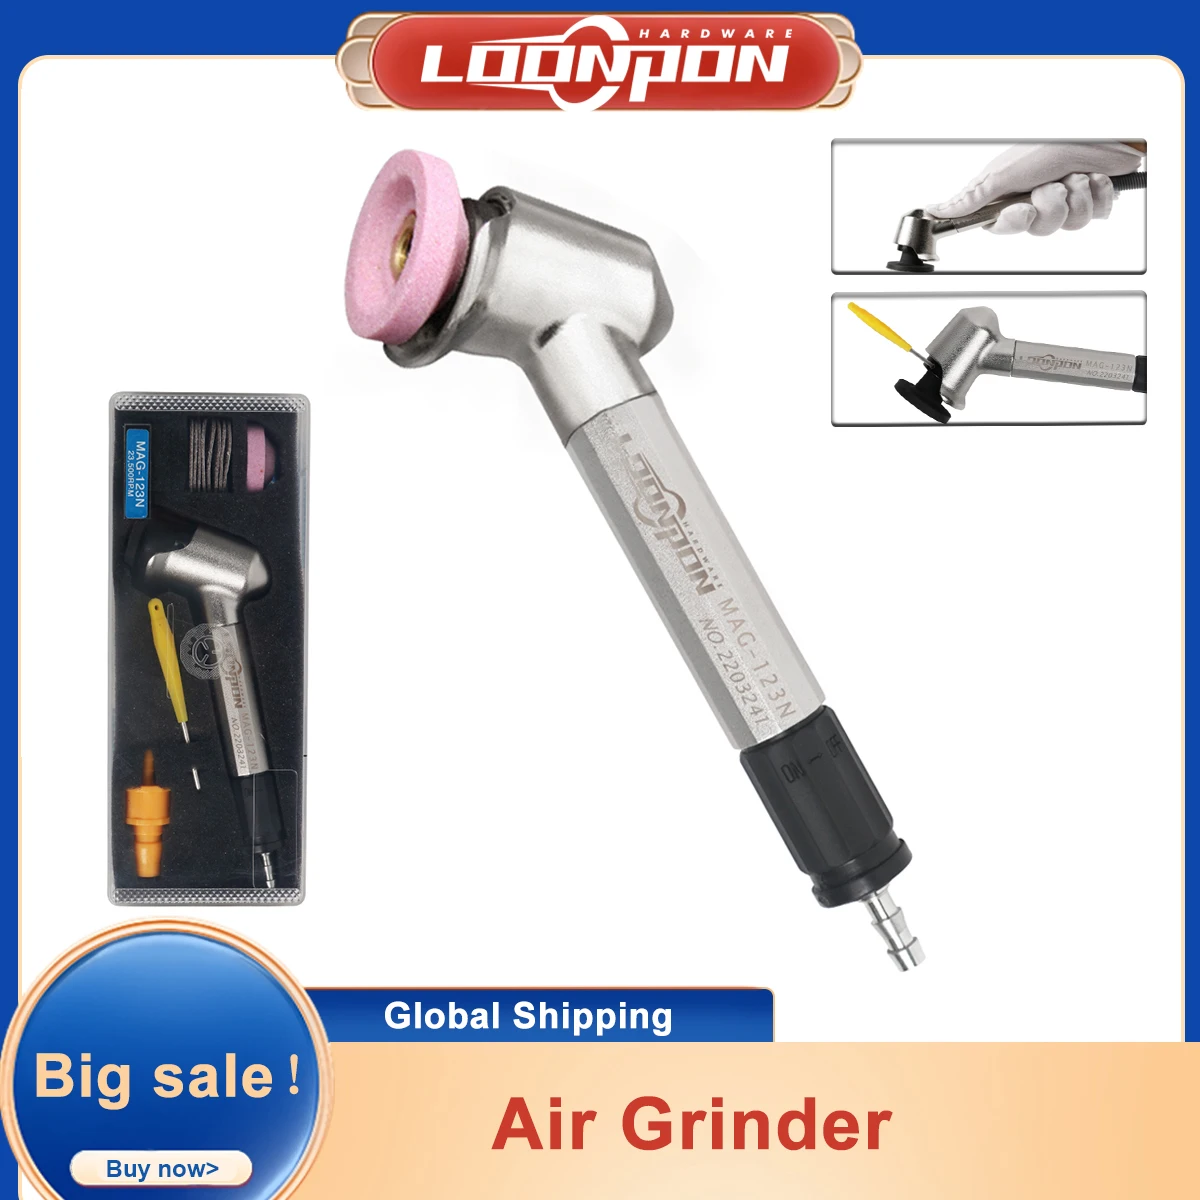  Pneumatic Grinding Pen, Pneumatic Grinding Pen 120 Degree  Bending Head Air Micro Die Grinder 52500 RPM : Tools & Home Improvement